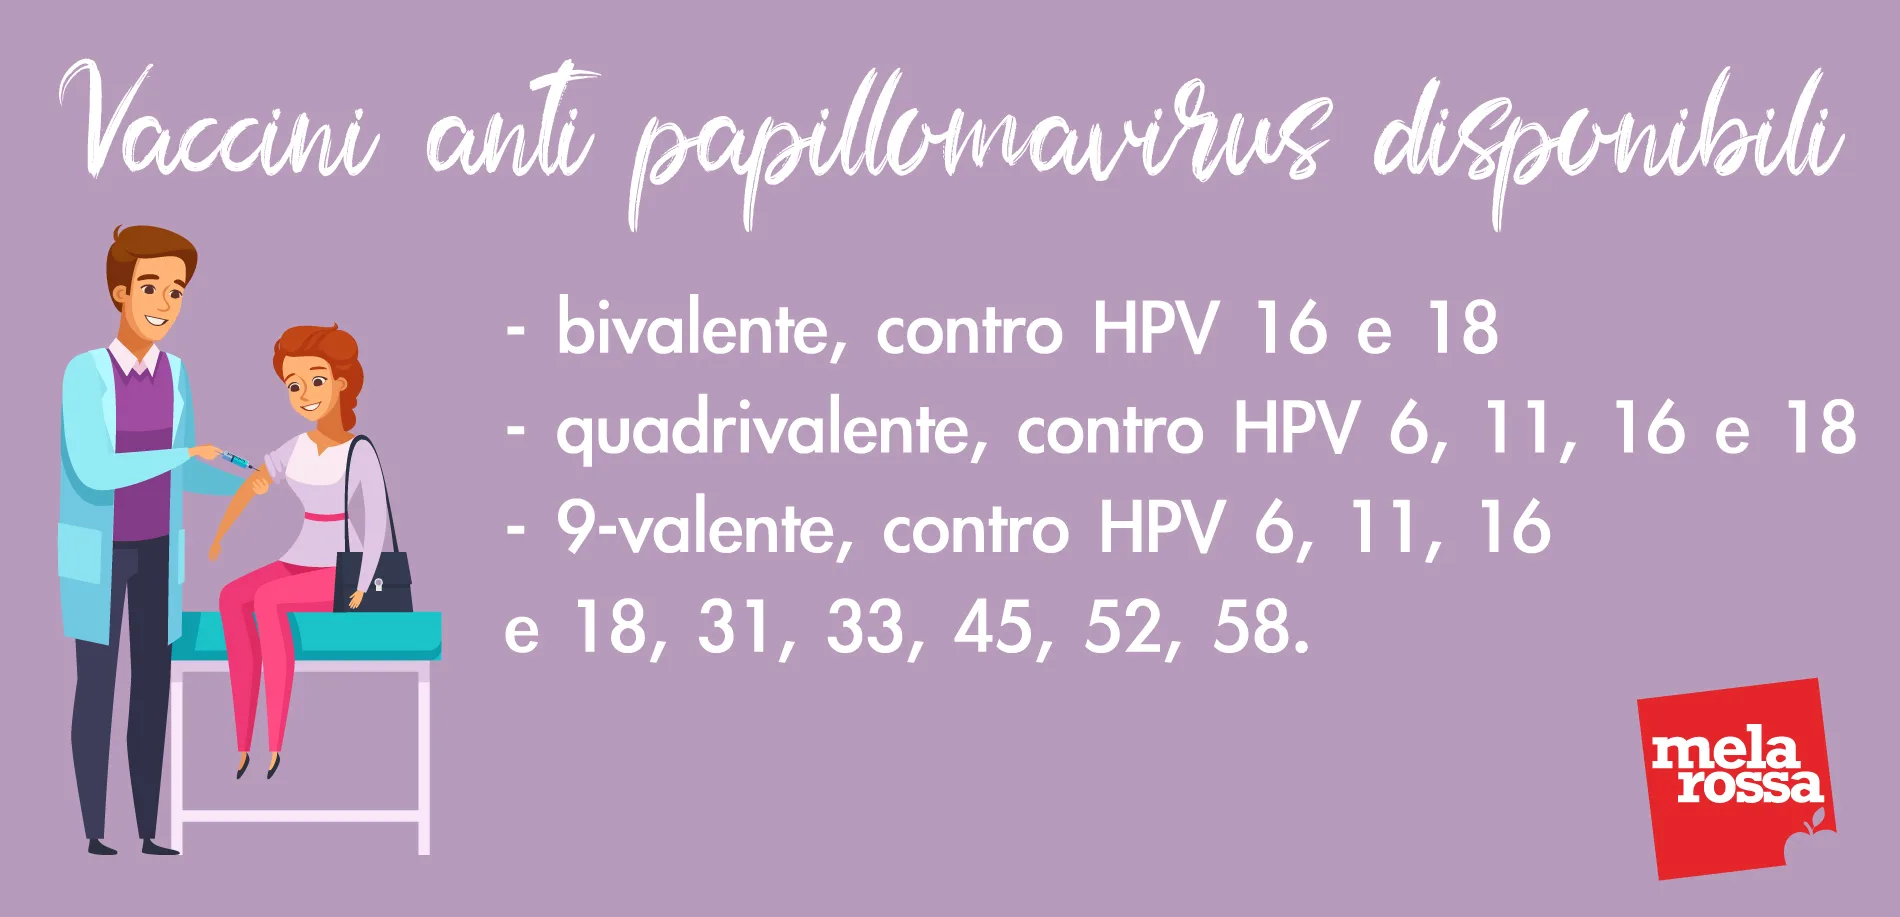 human papillomavirus infection level